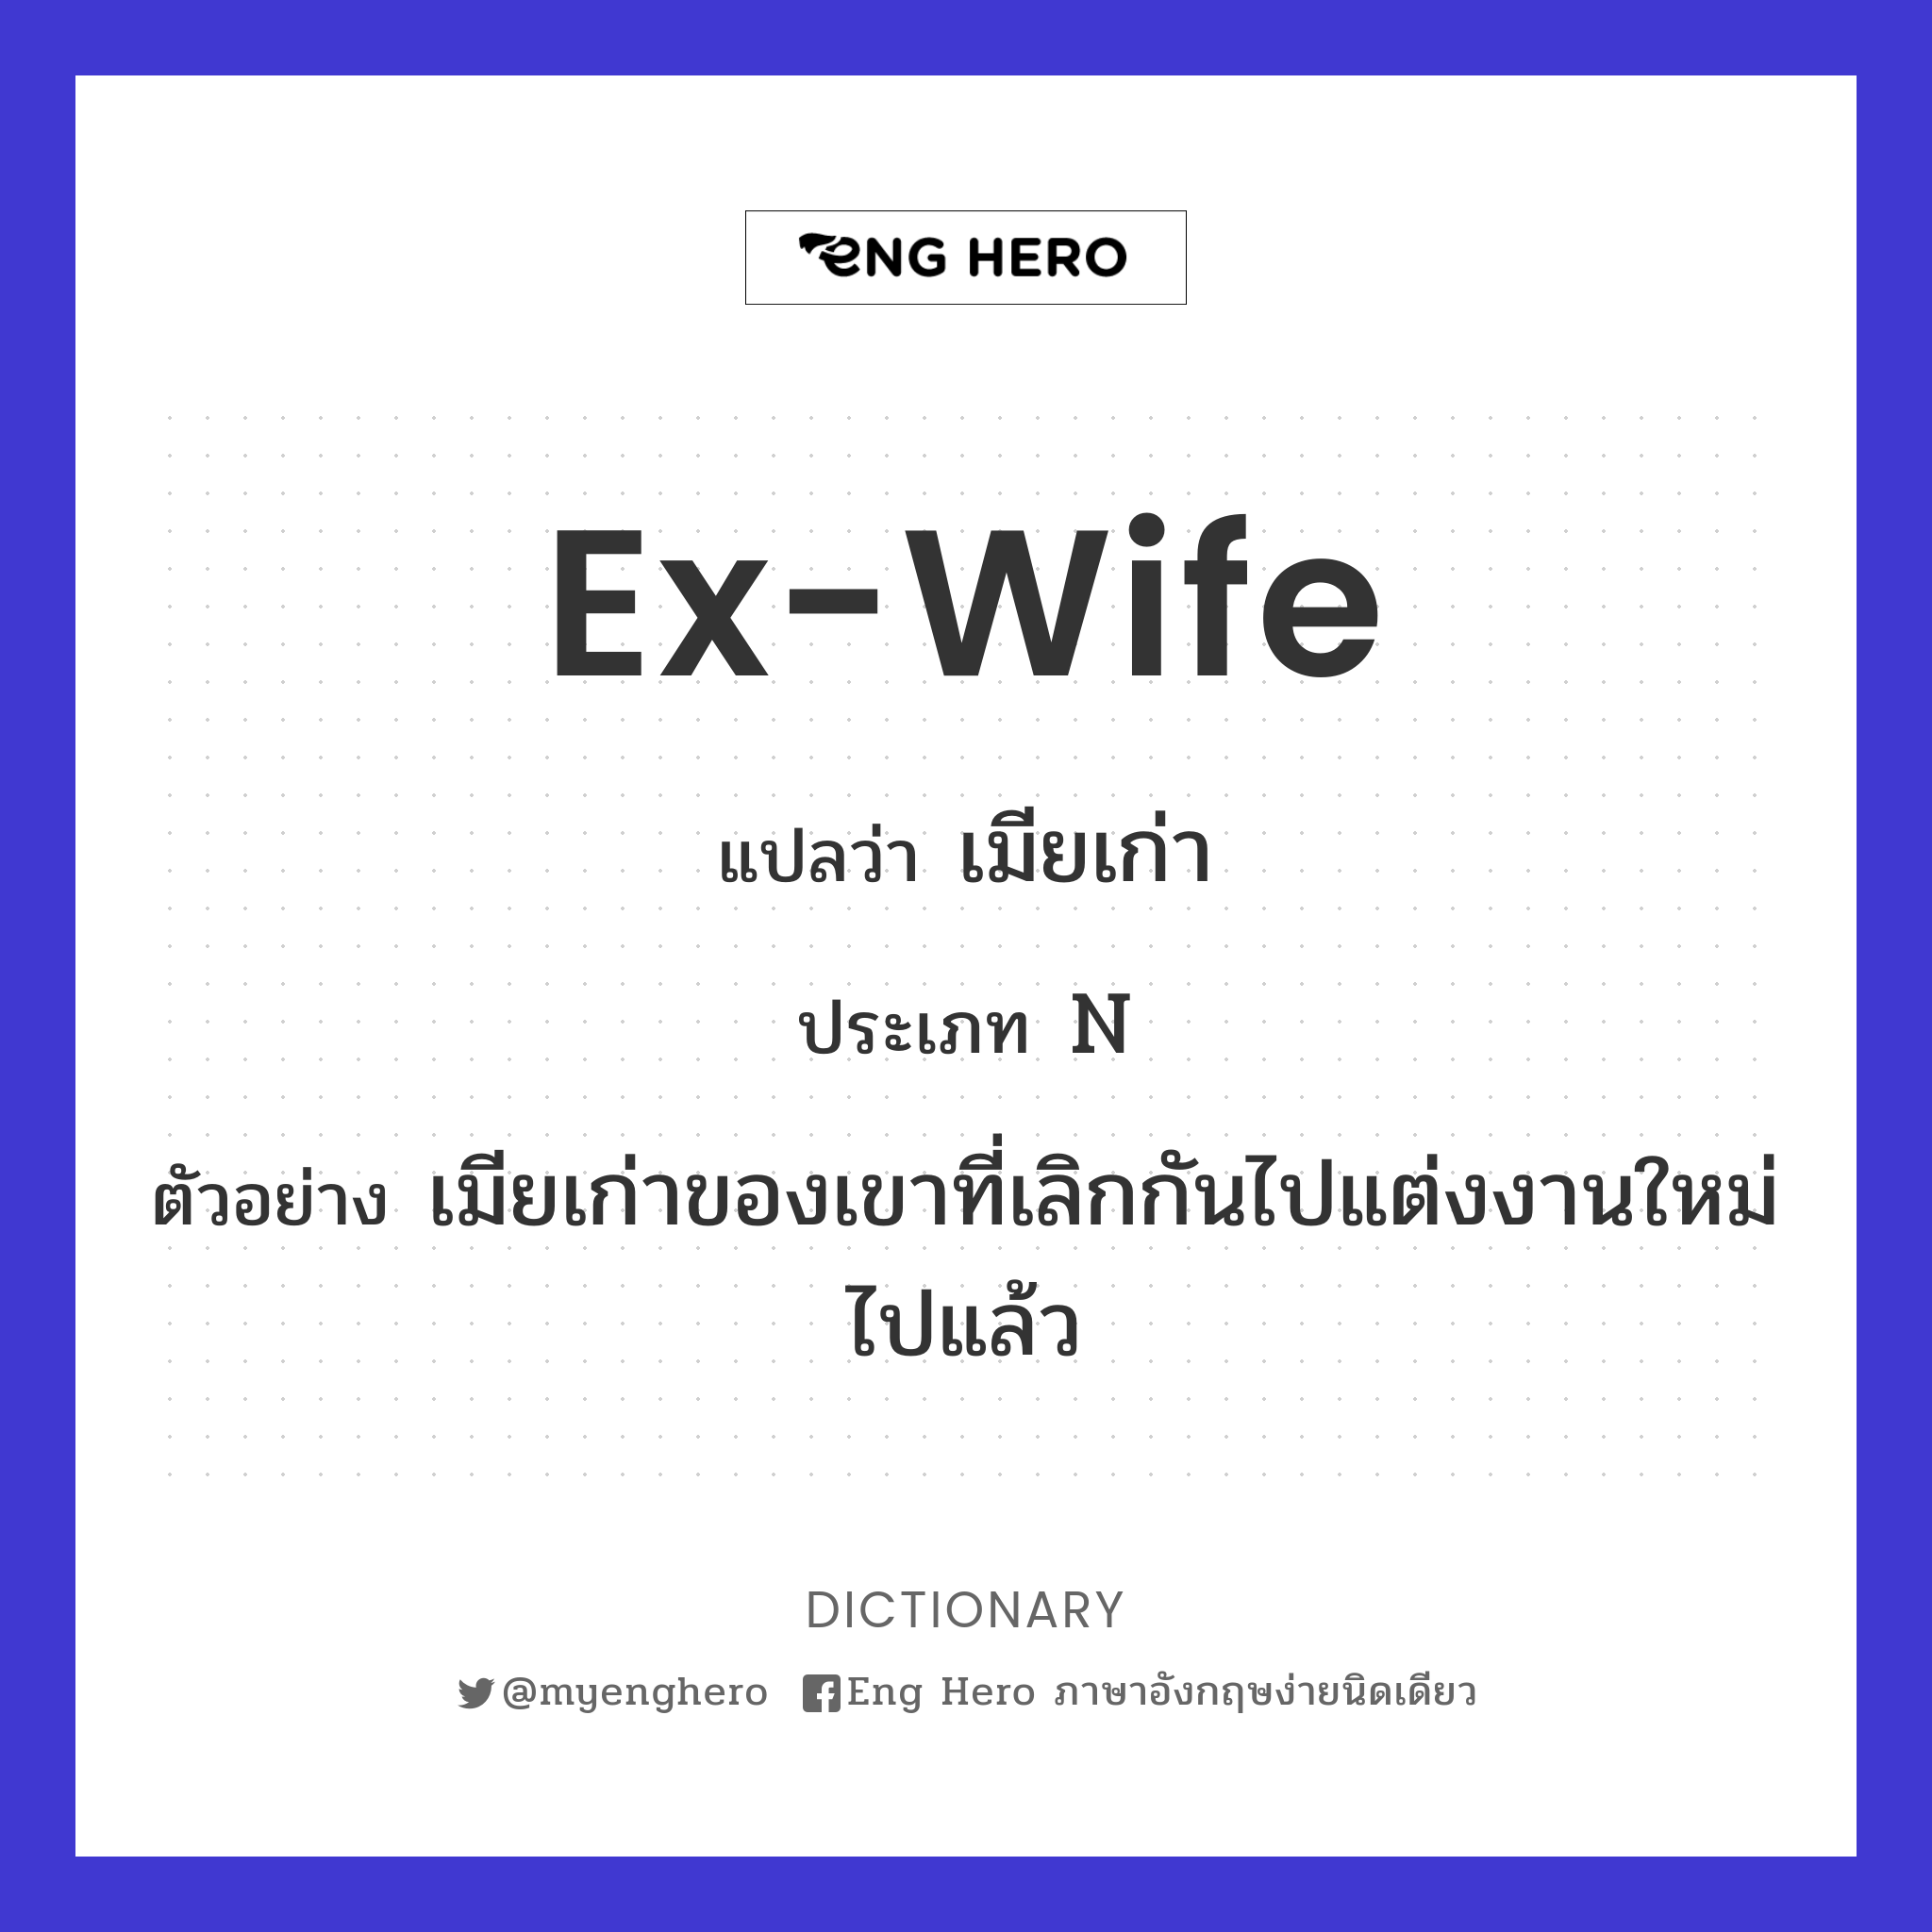 ex-wife